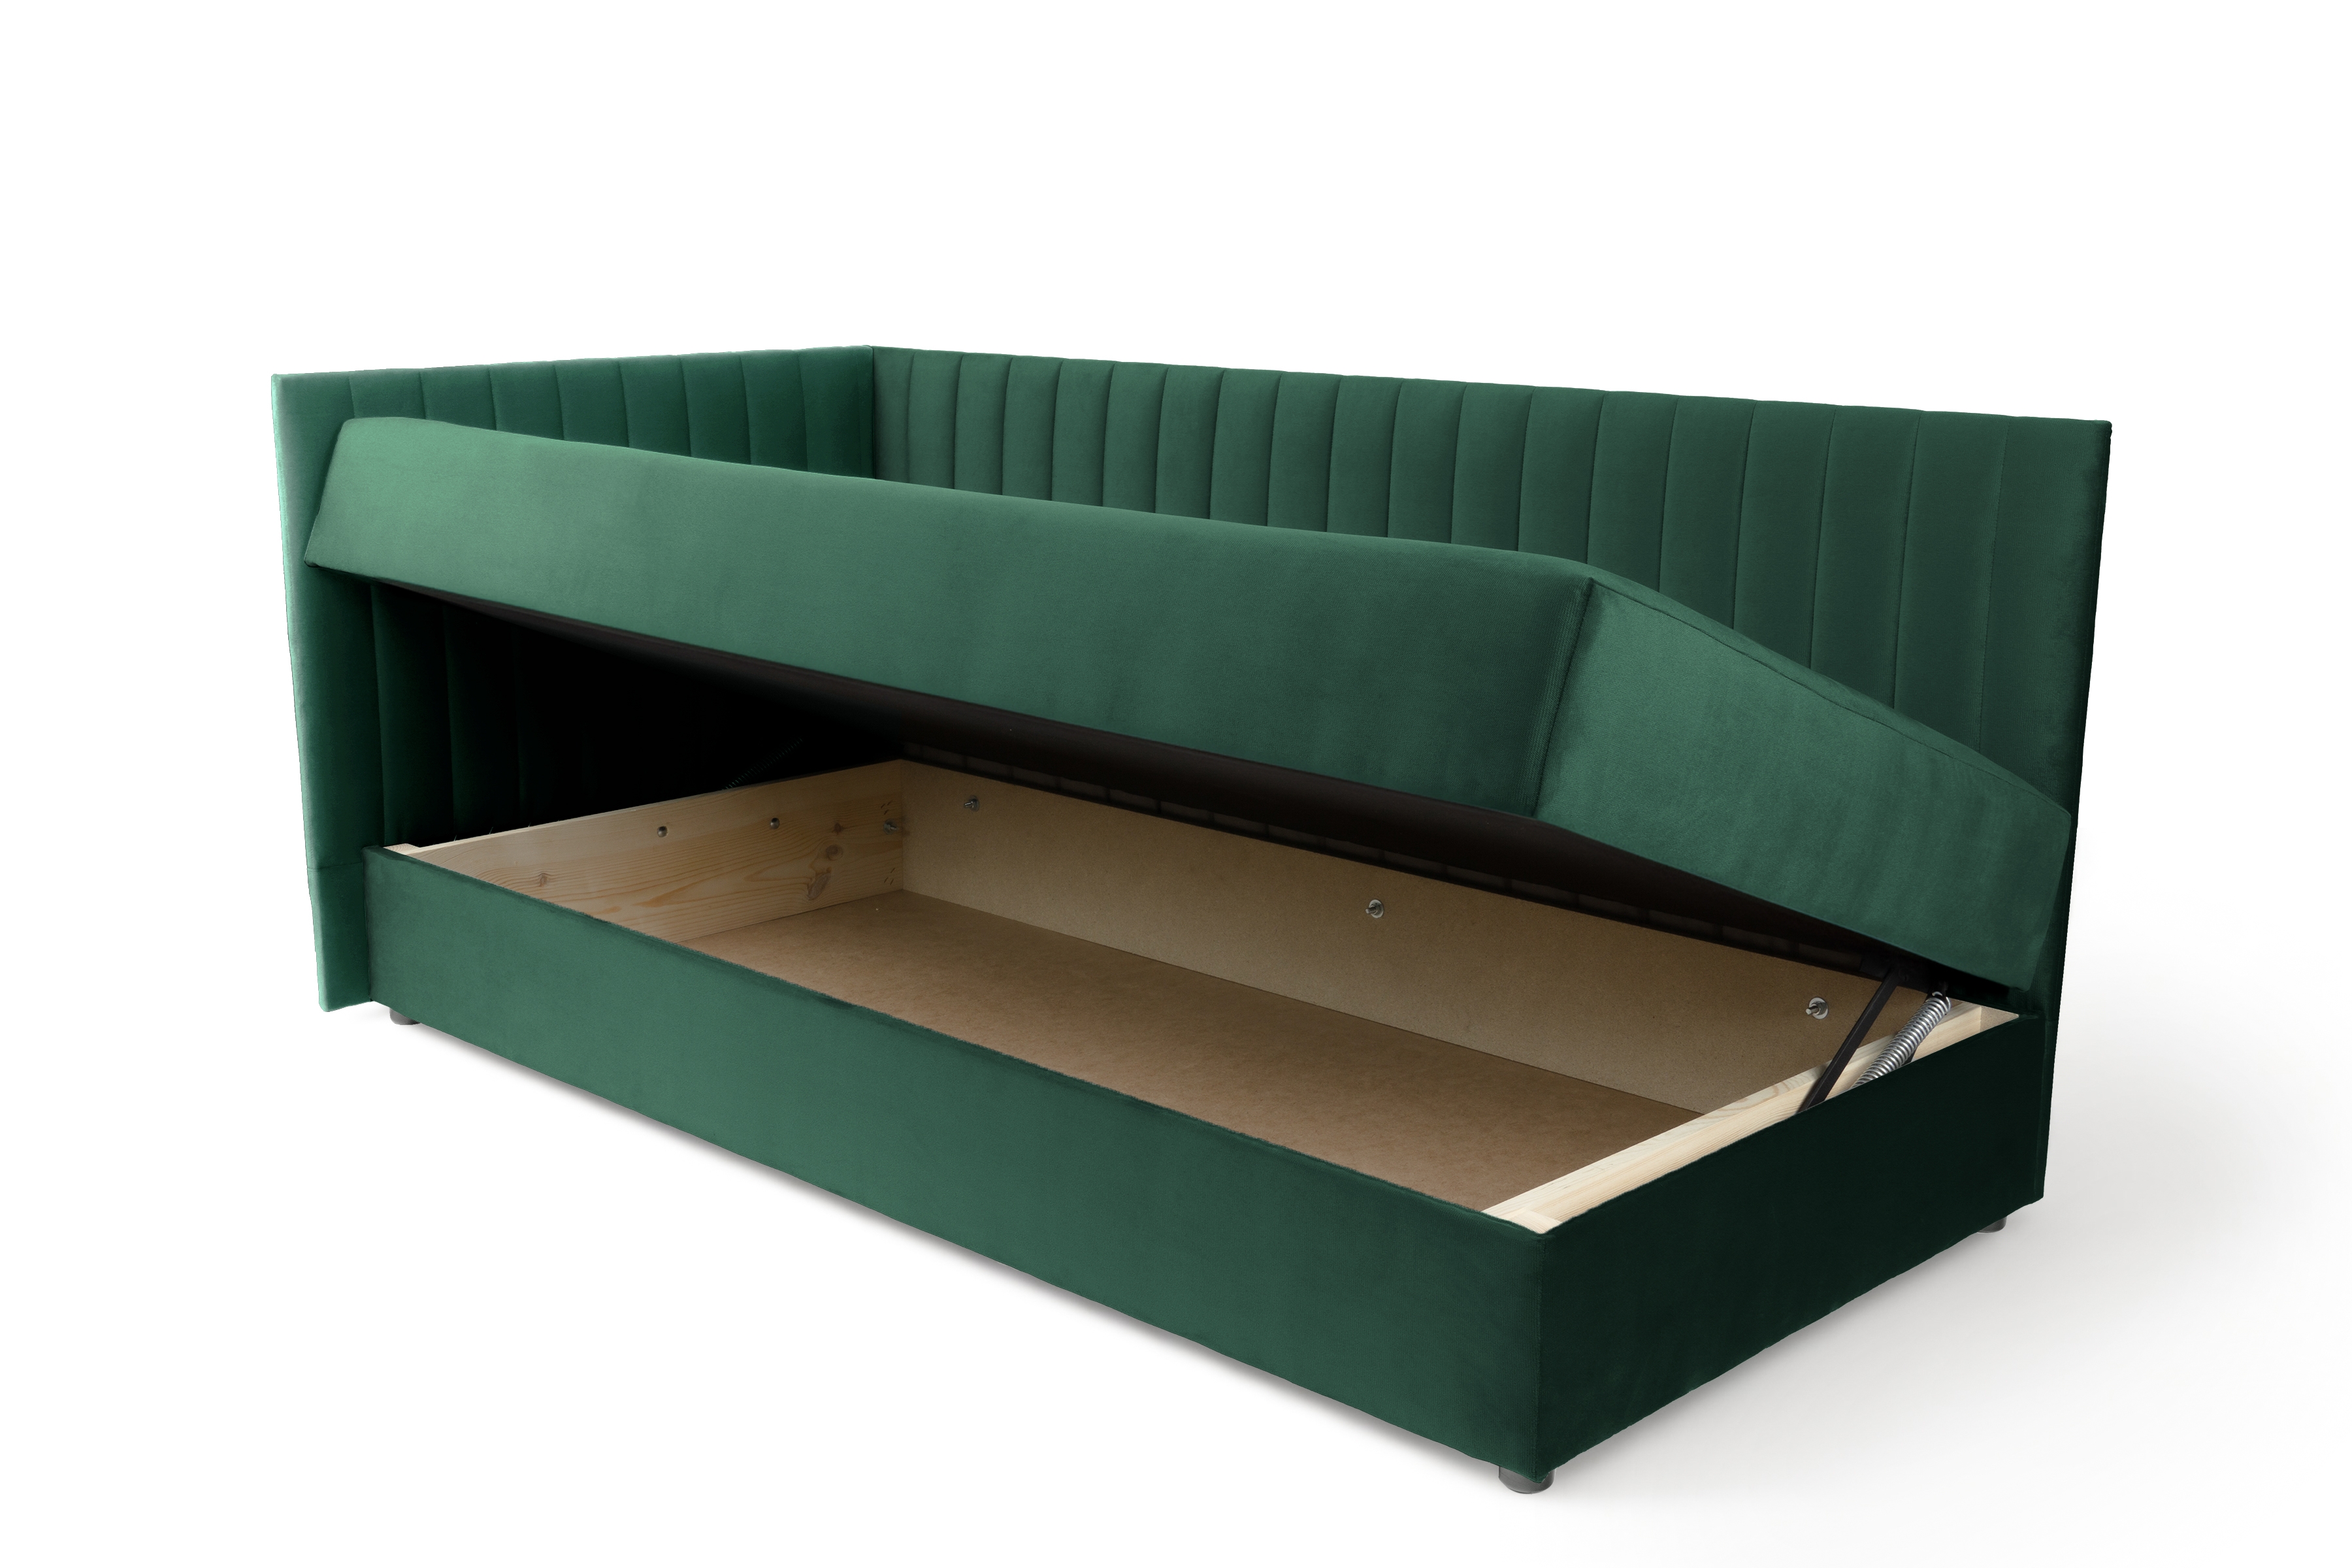 Tapczan/łóżko lewostronne z pojemnikiem Nutri - zielony welur Zanzibar 162, 186x90/100 cm Tapczan/łóżko lewostronne z pojemnikiem Nutri - zielony welur Zanzibar 162, 186x90/100 cm